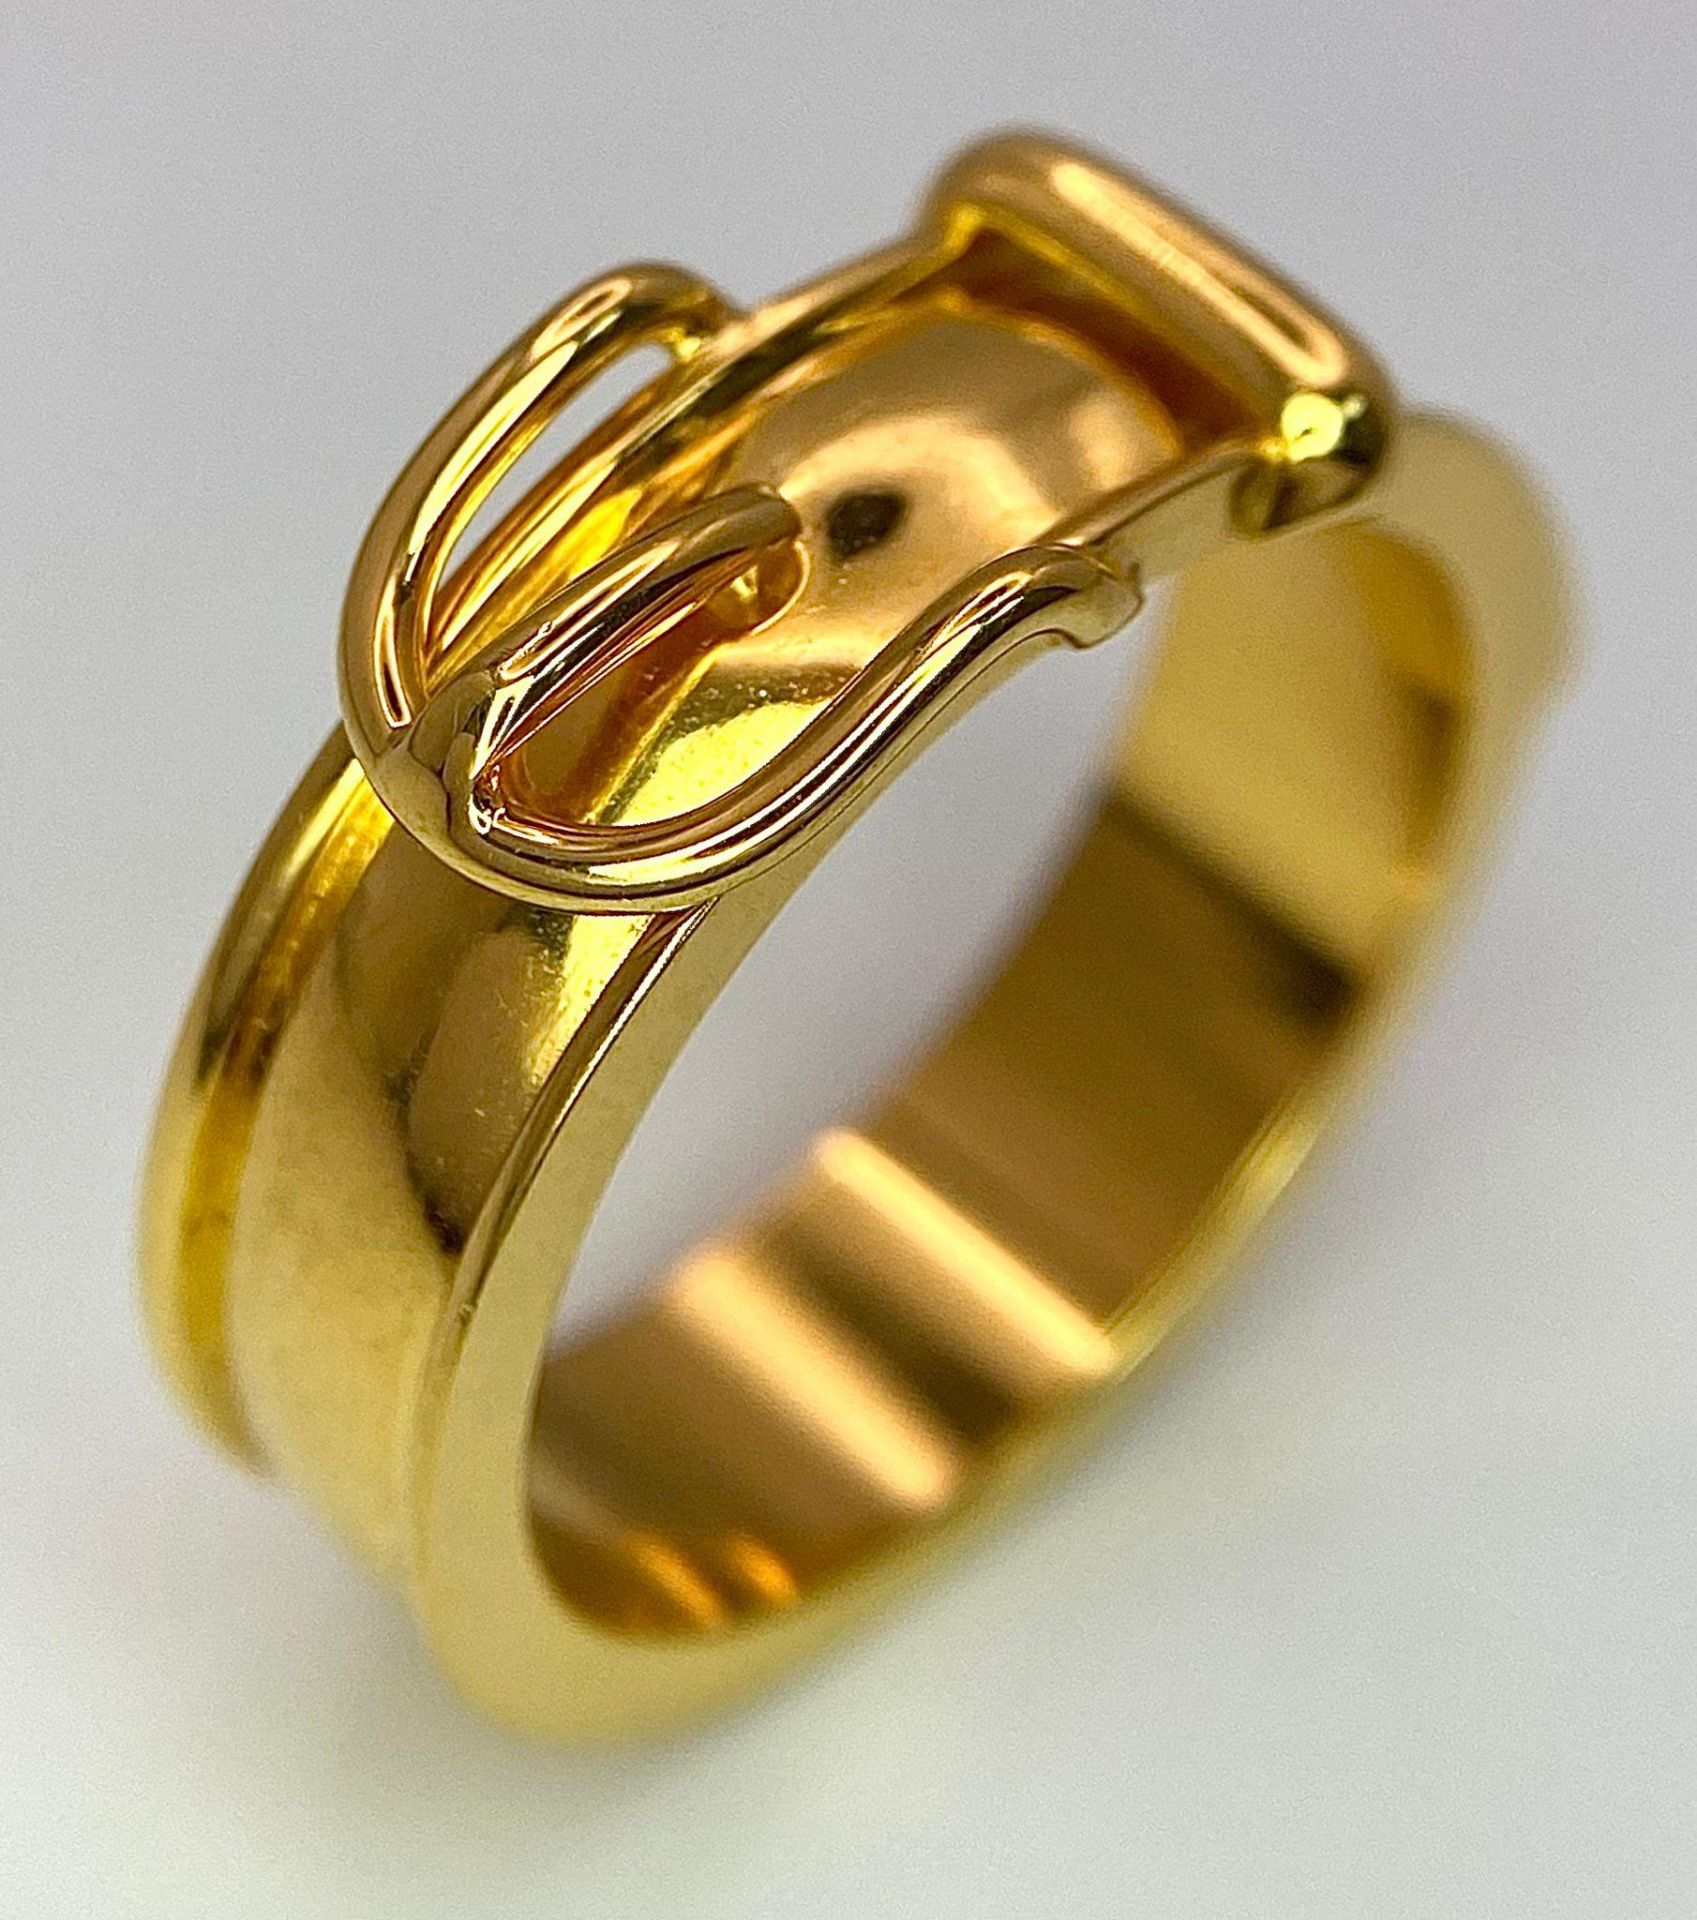 A Gold Plated Hermes Designer Belt Buckle Ring. Size S.